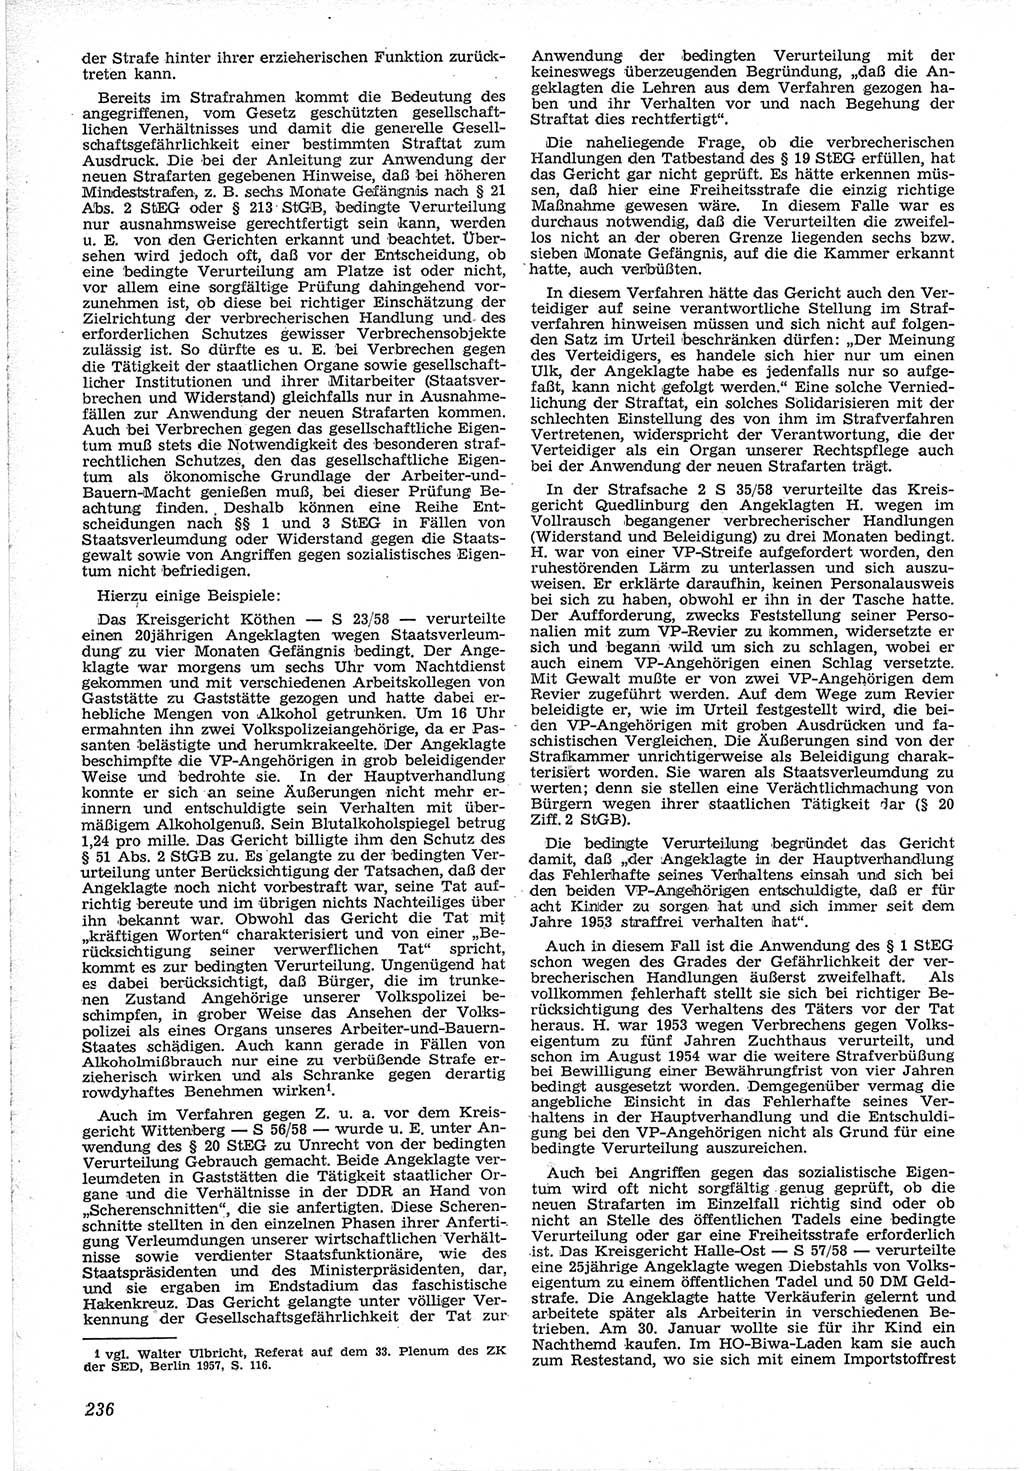 Neue Justiz (NJ), Zeitschrift für Recht und Rechtswissenschaft [Deutsche Demokratische Republik (DDR)], 12. Jahrgang 1958, Seite 236 (NJ DDR 1958, S. 236)